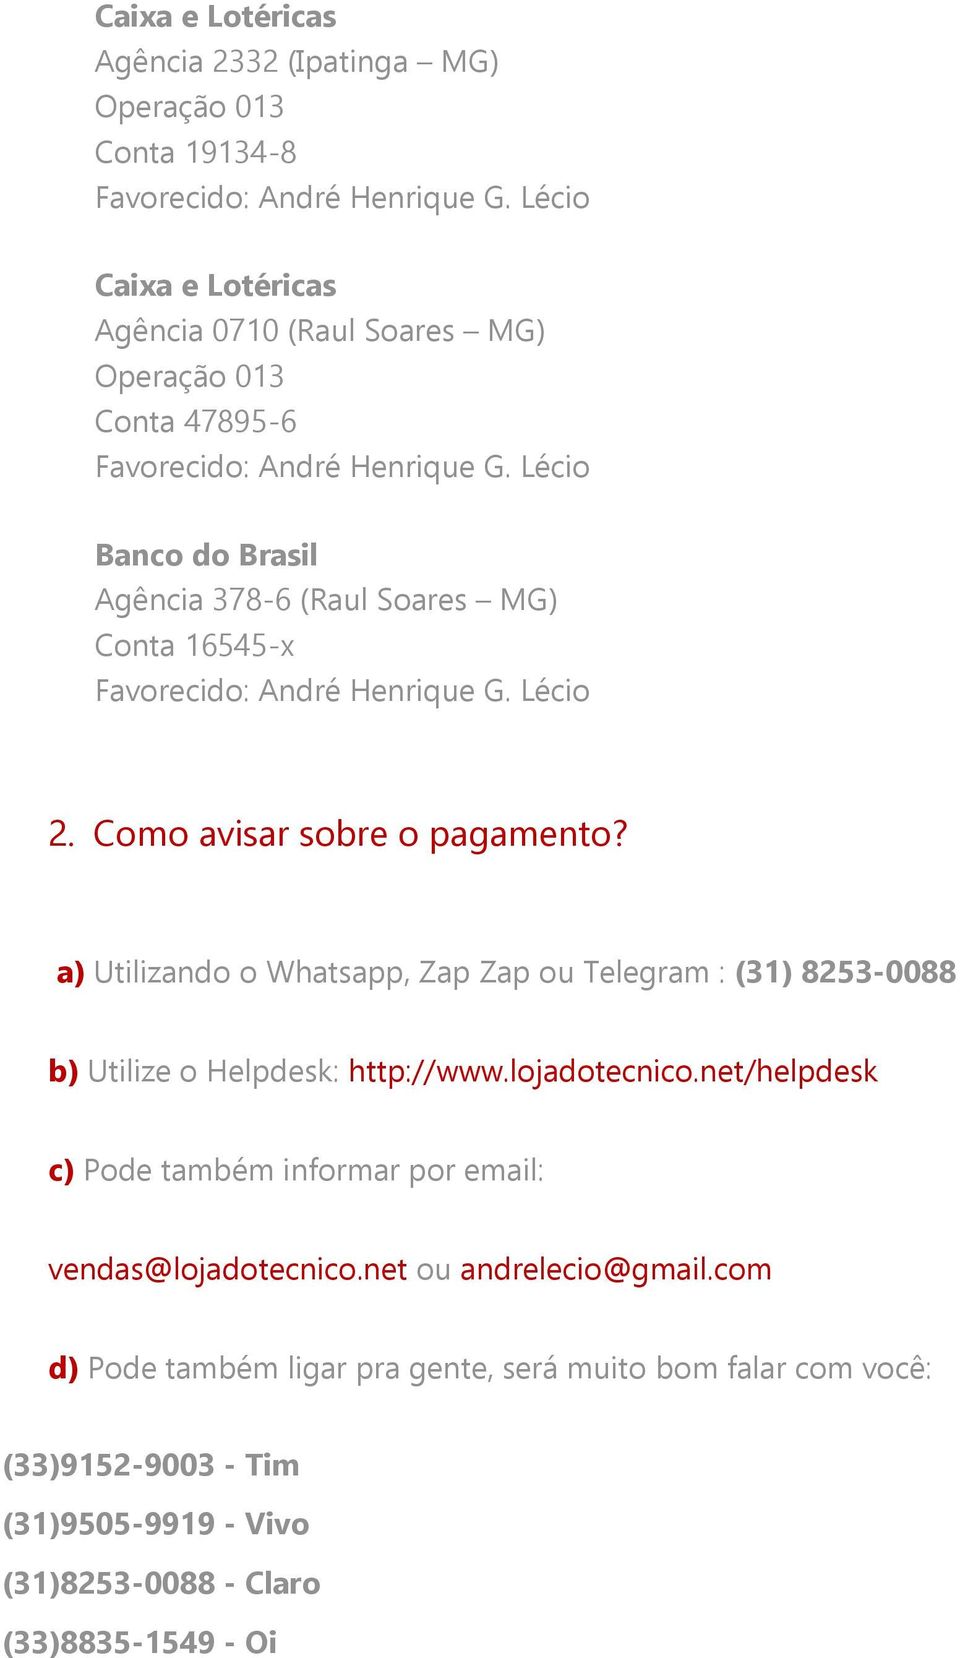 a) Utilizando o Whatsapp, Zap Zap ou Telegram : (31) 8253-0088 b) Utilize o Helpdesk: http://www.lojadotecnico.